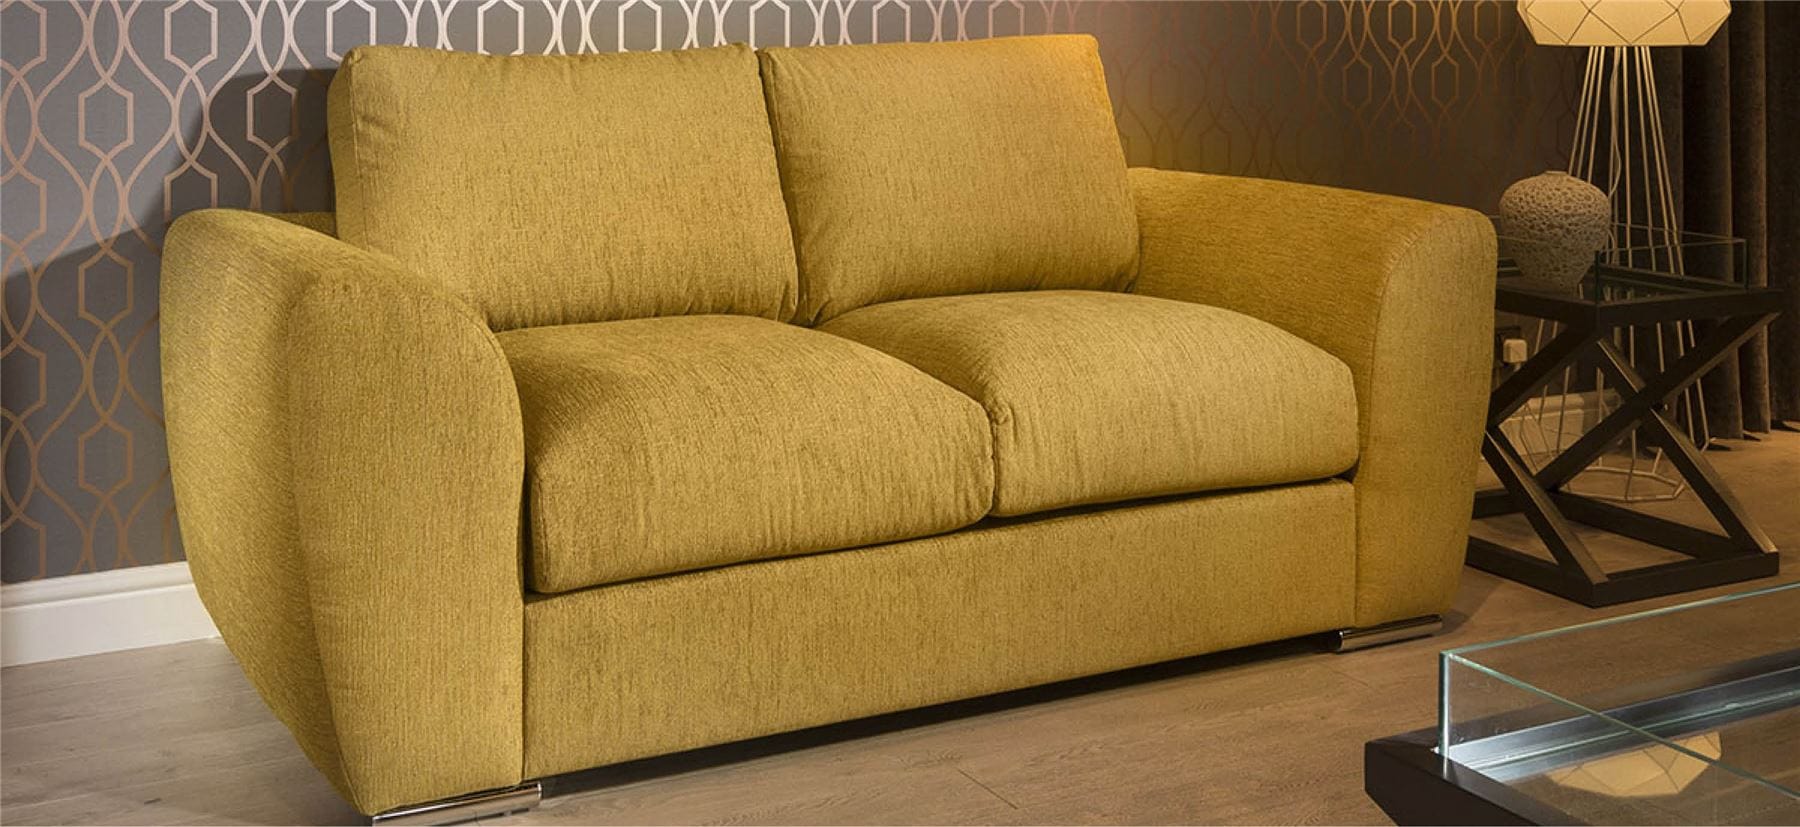 Quatropi Quatropi Modern Designer 2 Seater Settee/Sofa Made to Order Grey Fabric